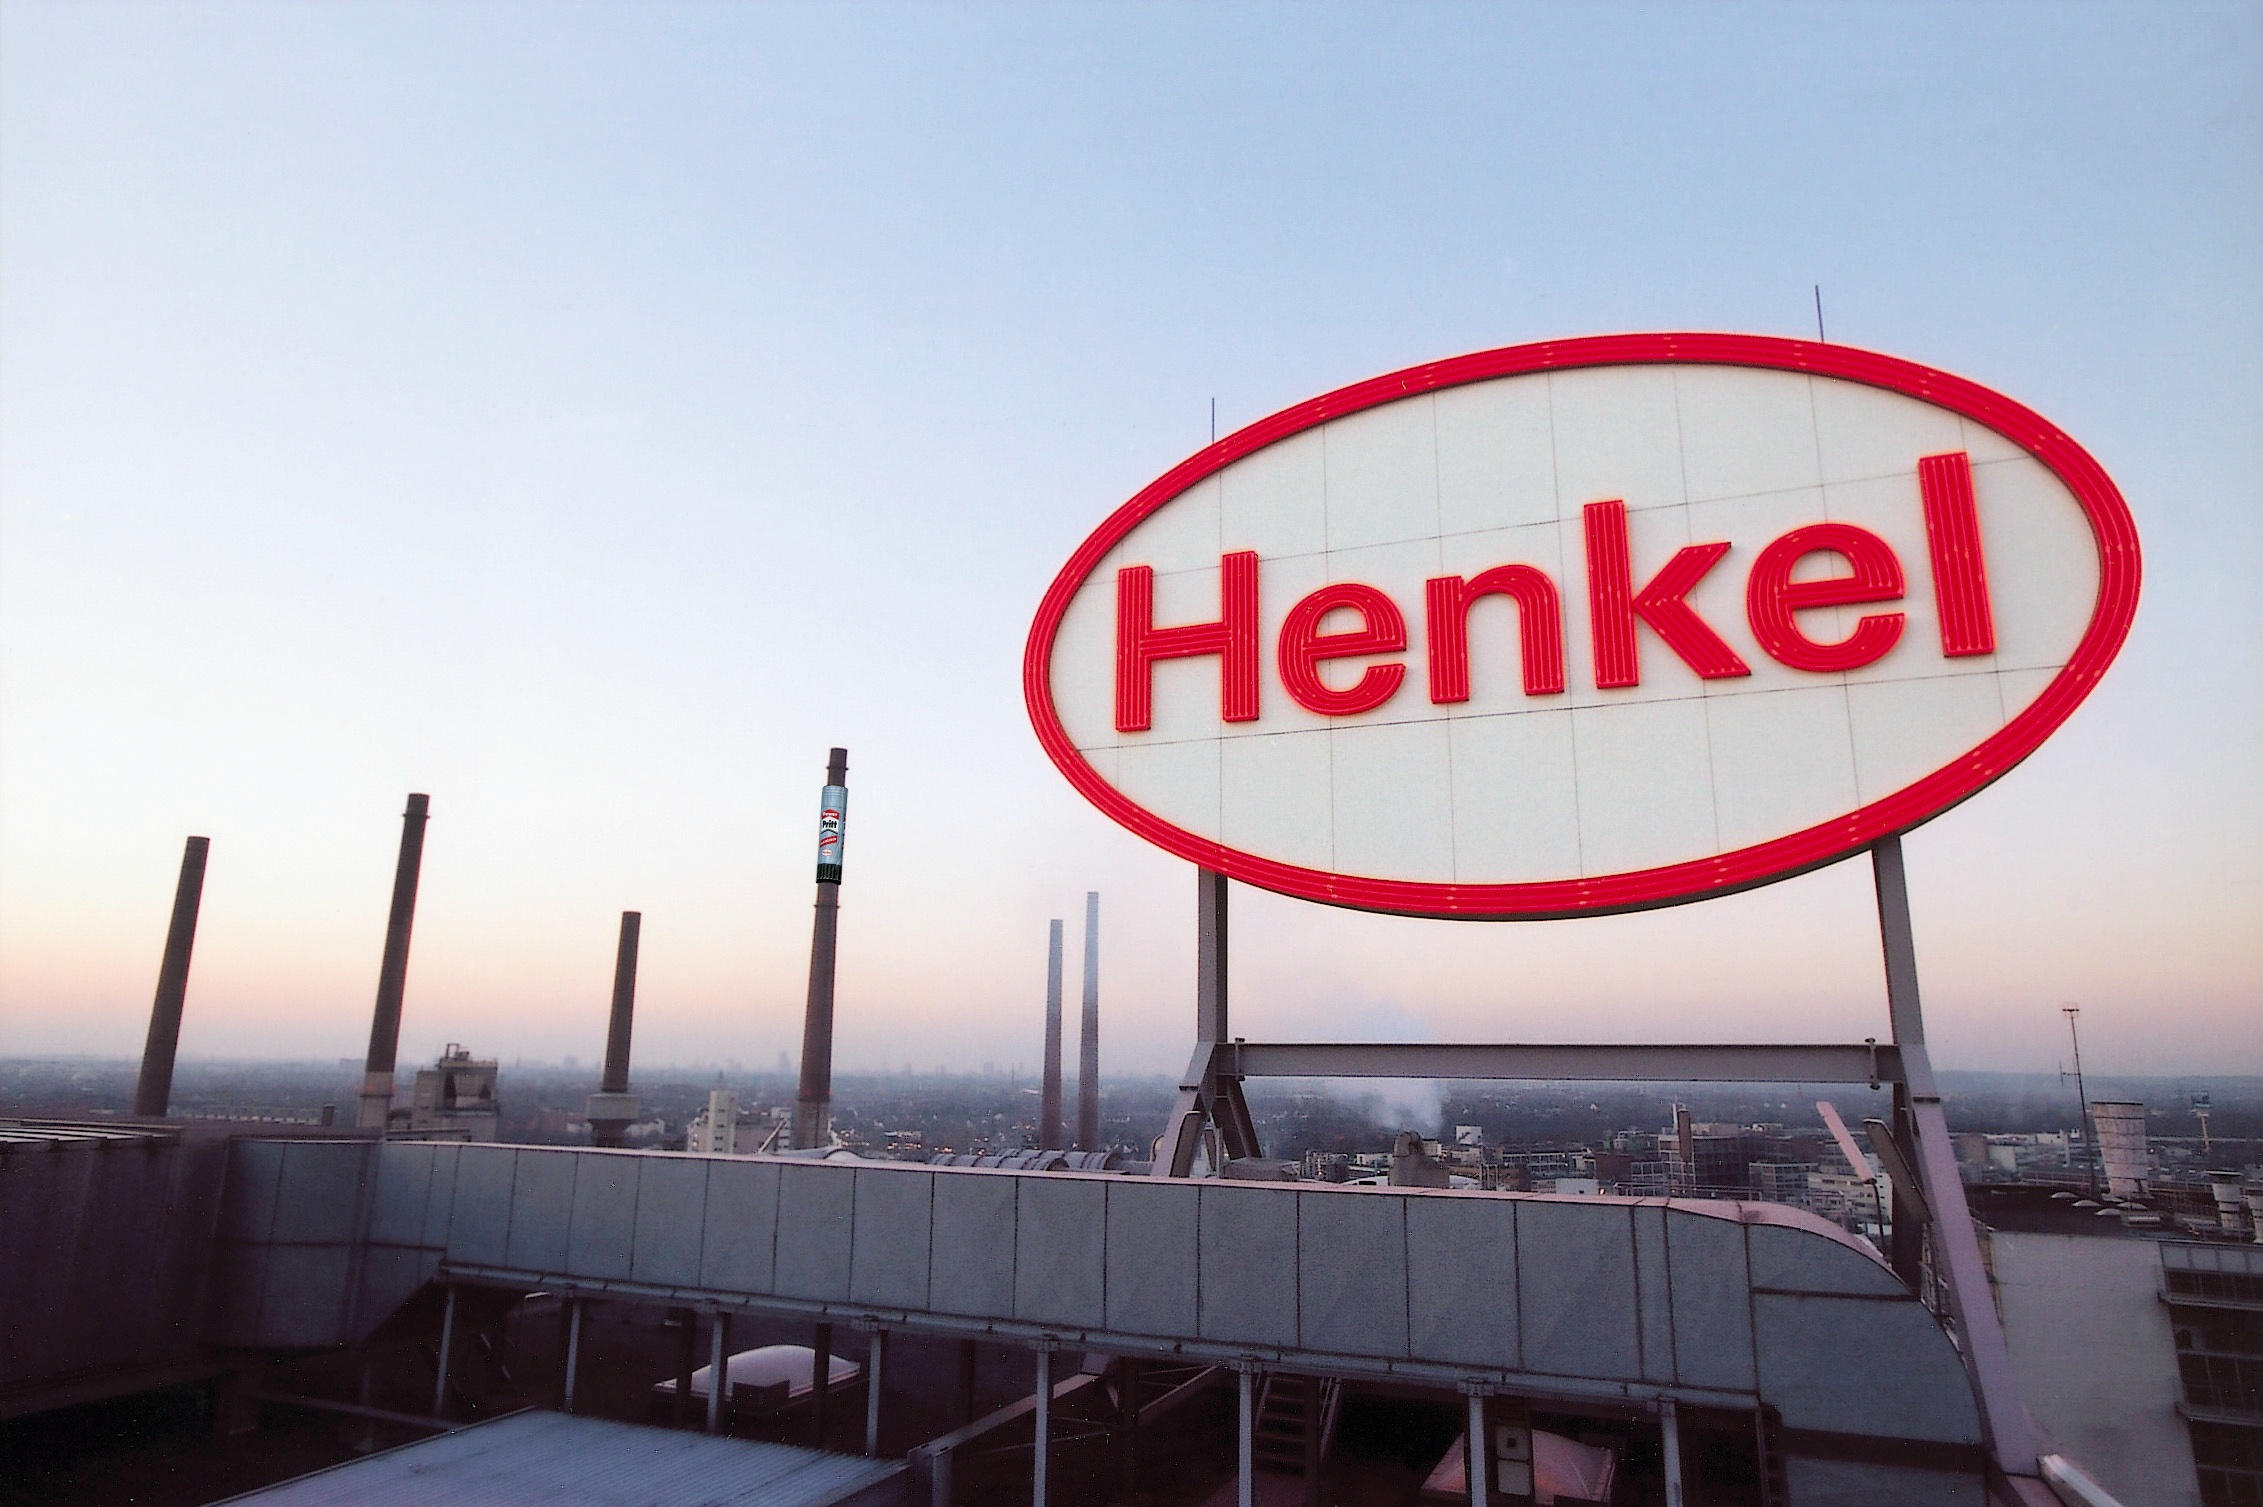 Henkel смывается из Энгельса и из России, репутация и убытки оцениваются в 184 млн евро. Саратовские власти о судьба завода молчат